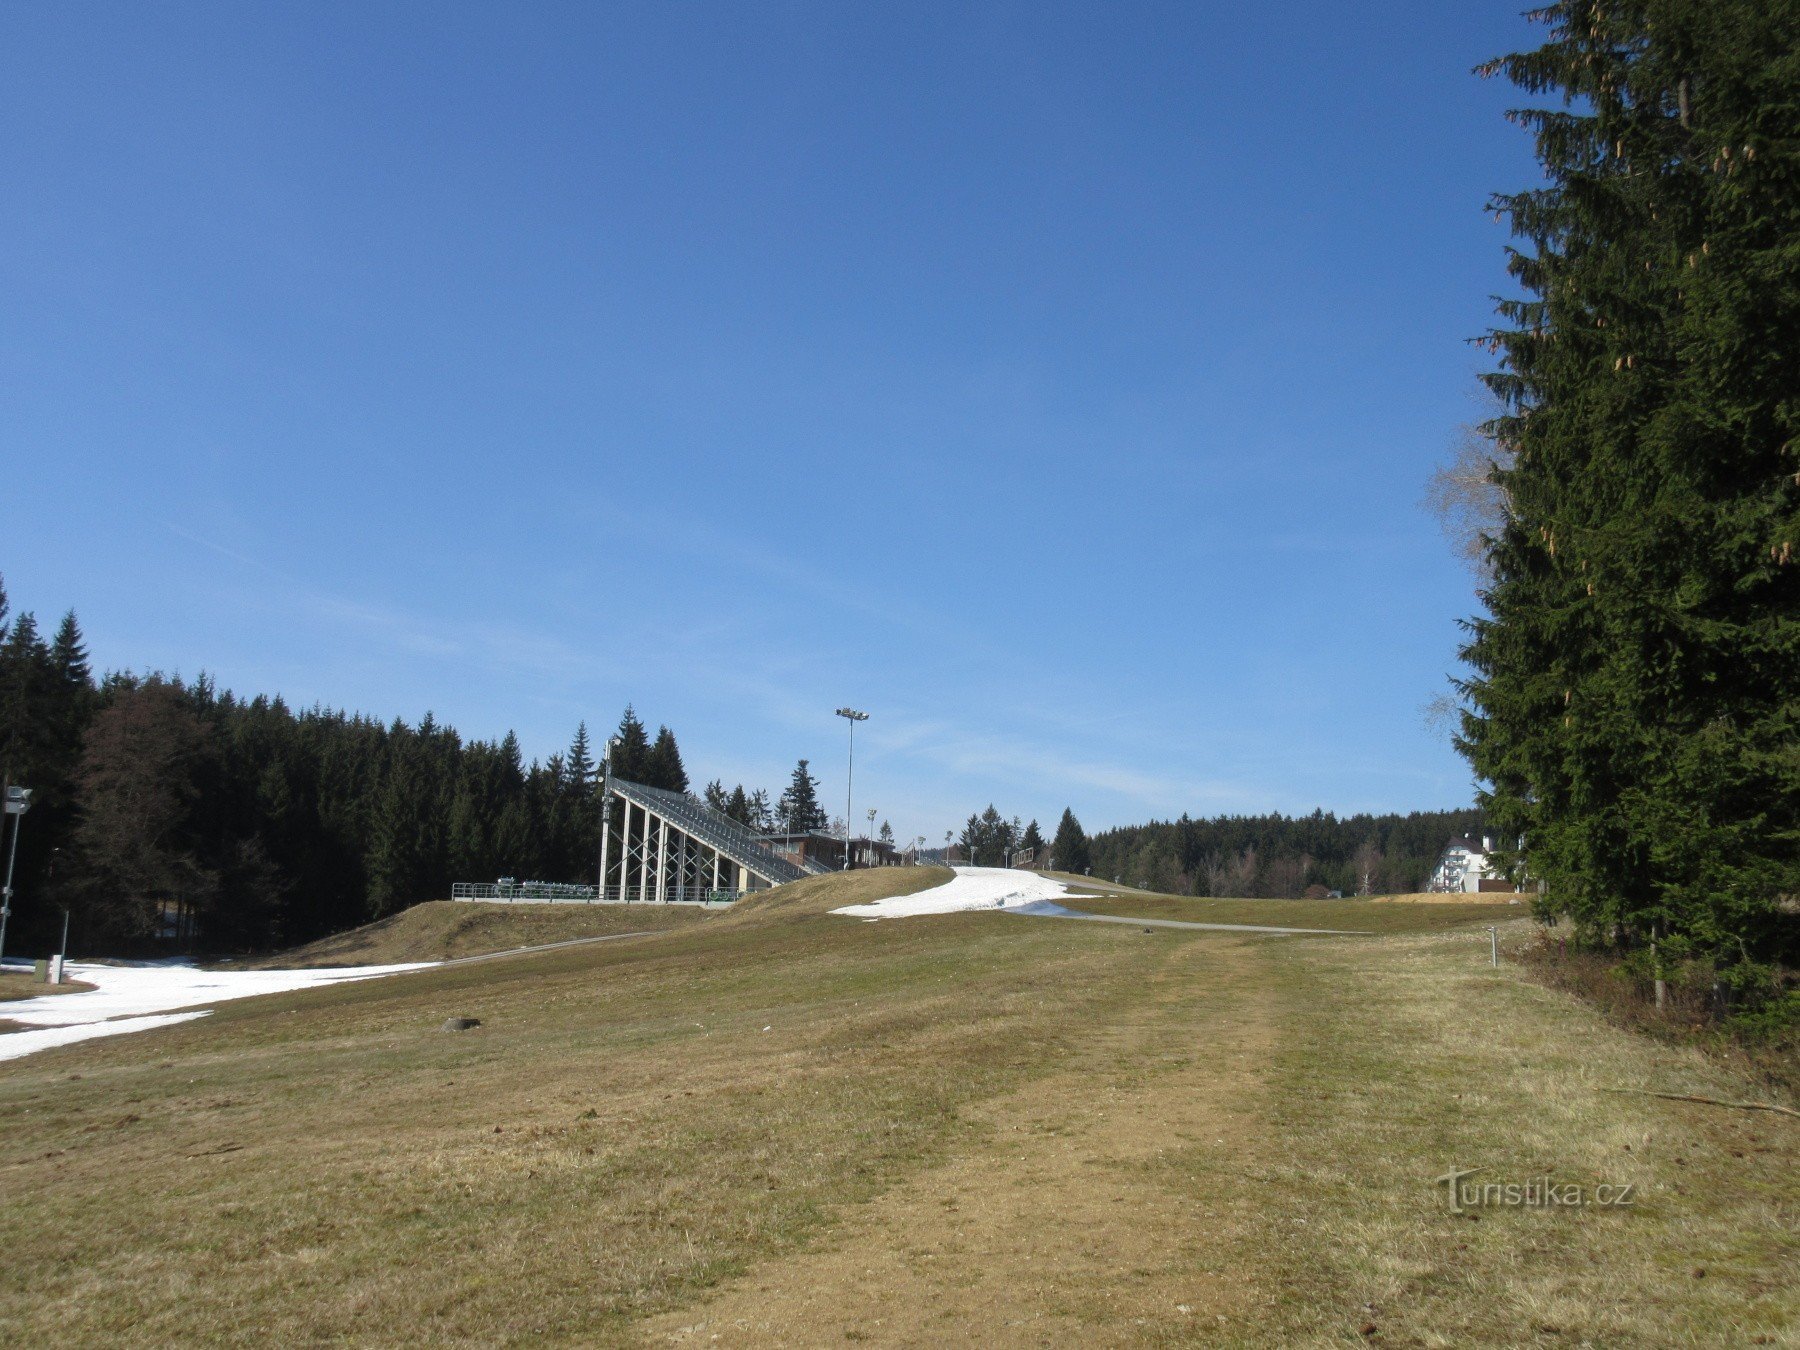 Nové Město – biatloncomplex Vysočina arena en de geschiedenis van de wintersport